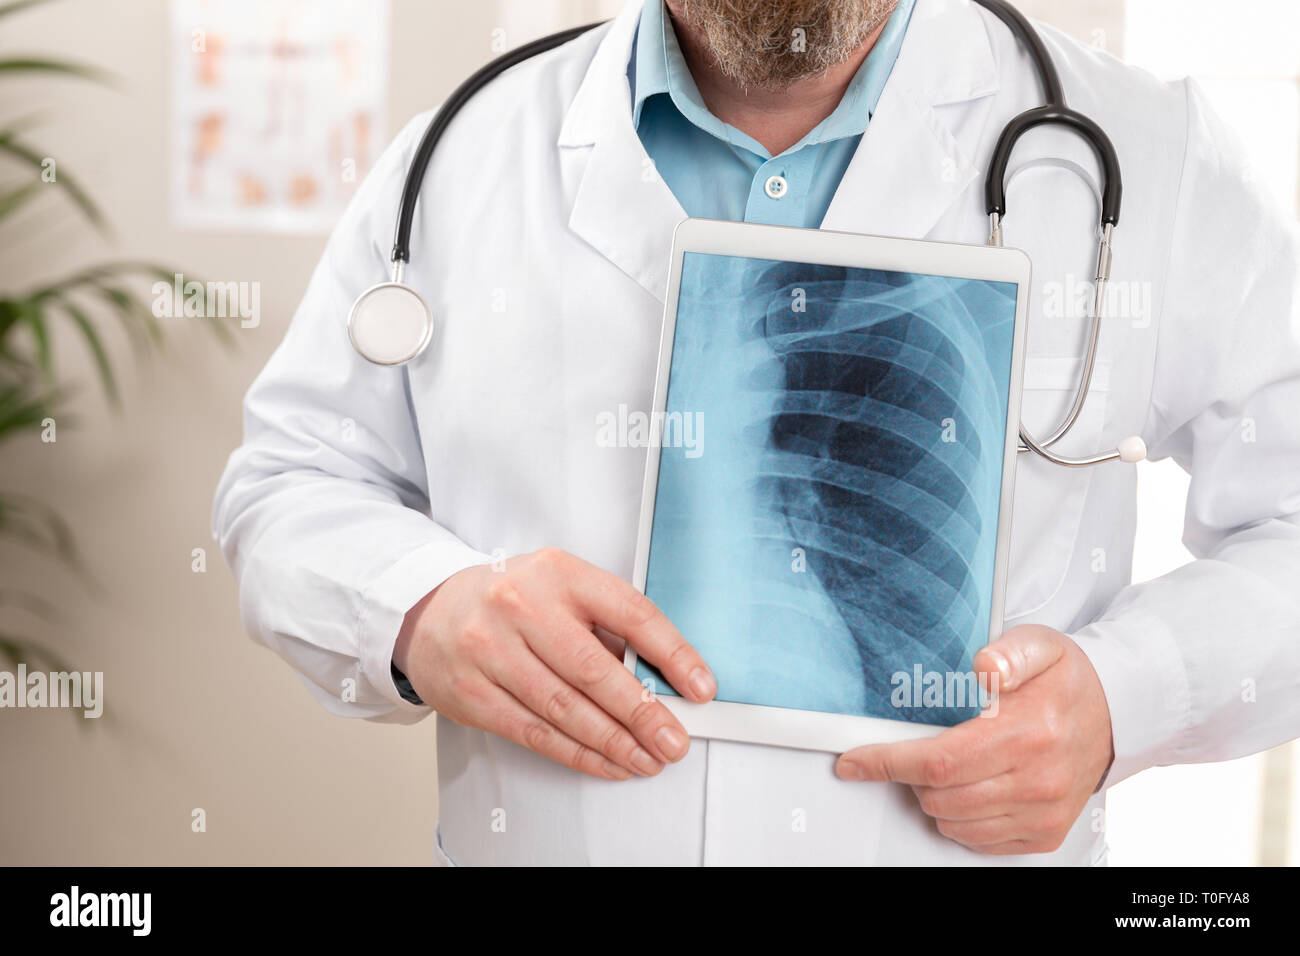 Médecin homme montrant une image de radiographie numérique sur une tablette Banque D'Images